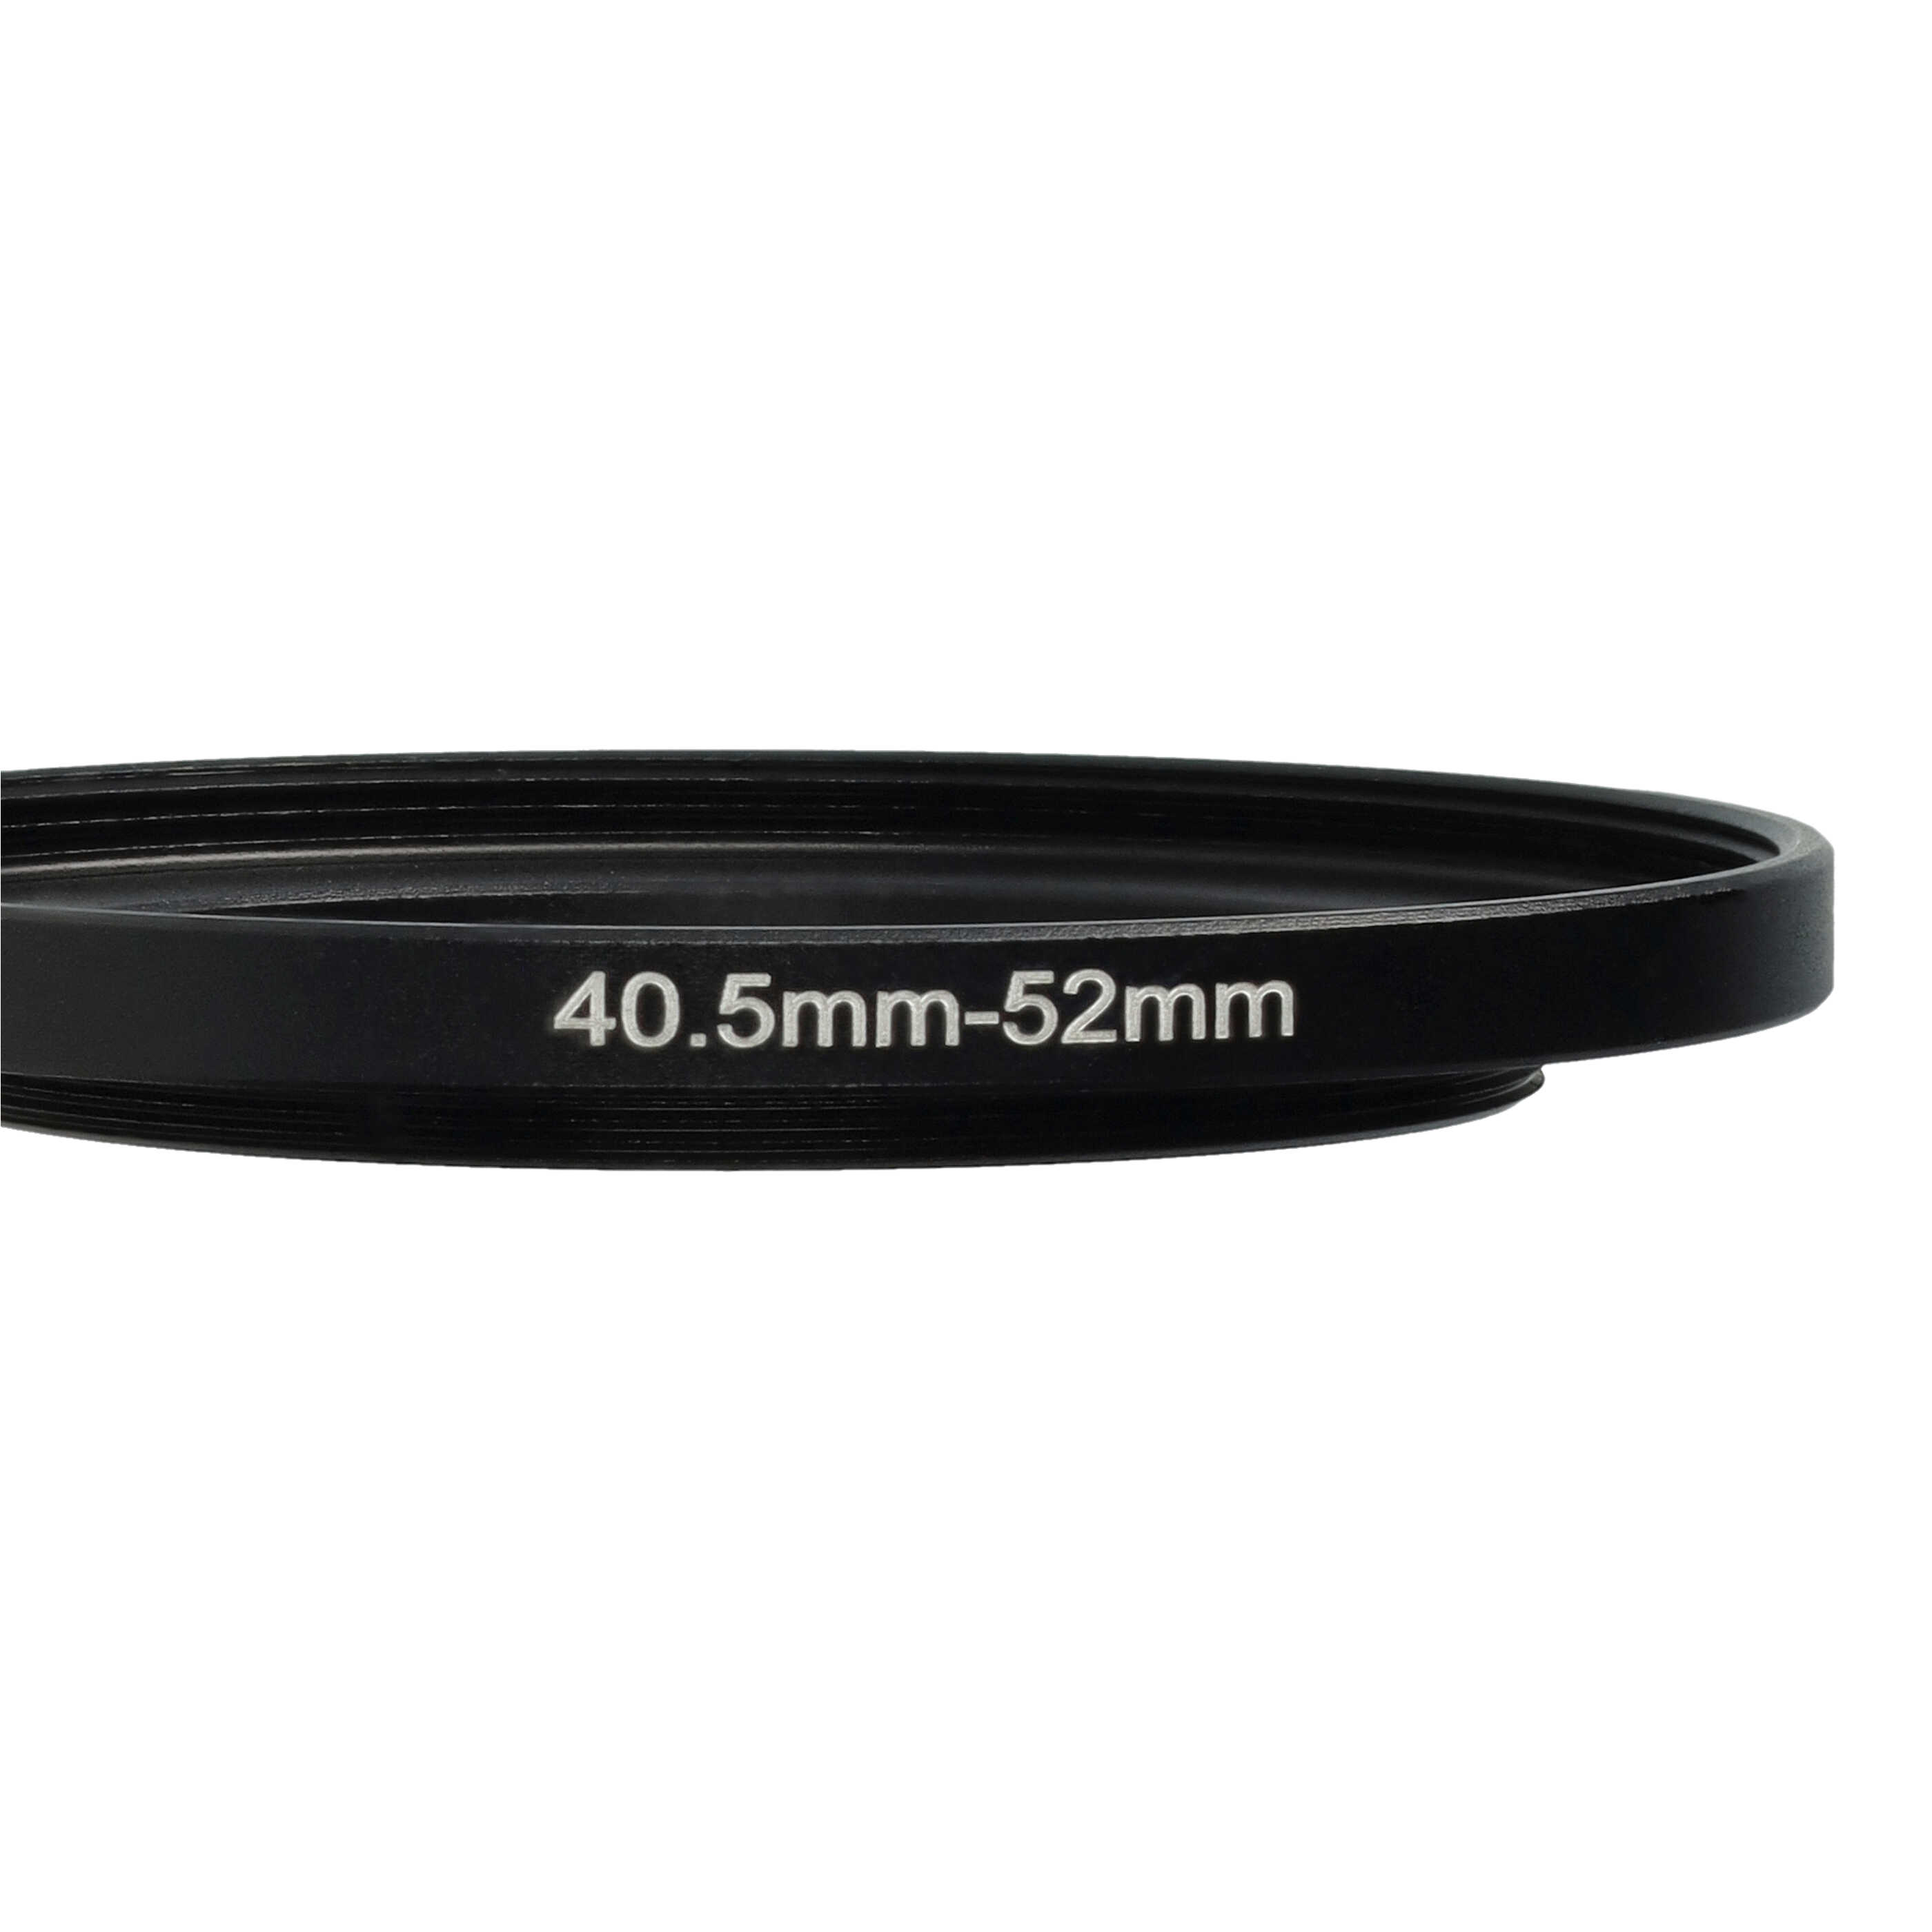 Bague Step-up 40,5 mm vers 52 mm pour divers objectifs d'appareil photo - Adaptateur filtre